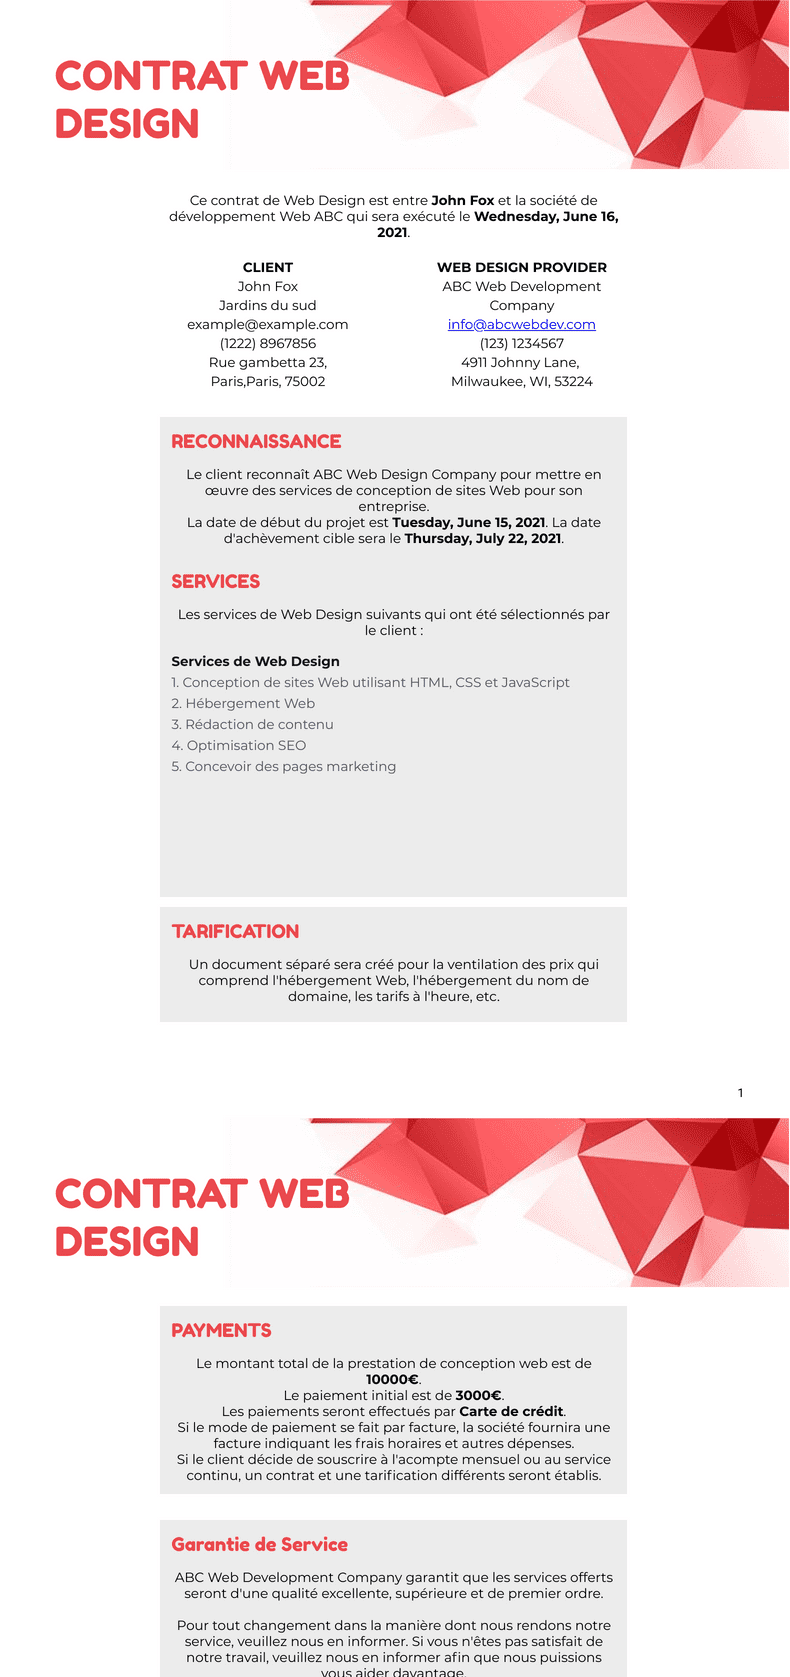 PDF Templates: Template Contrat Web Design